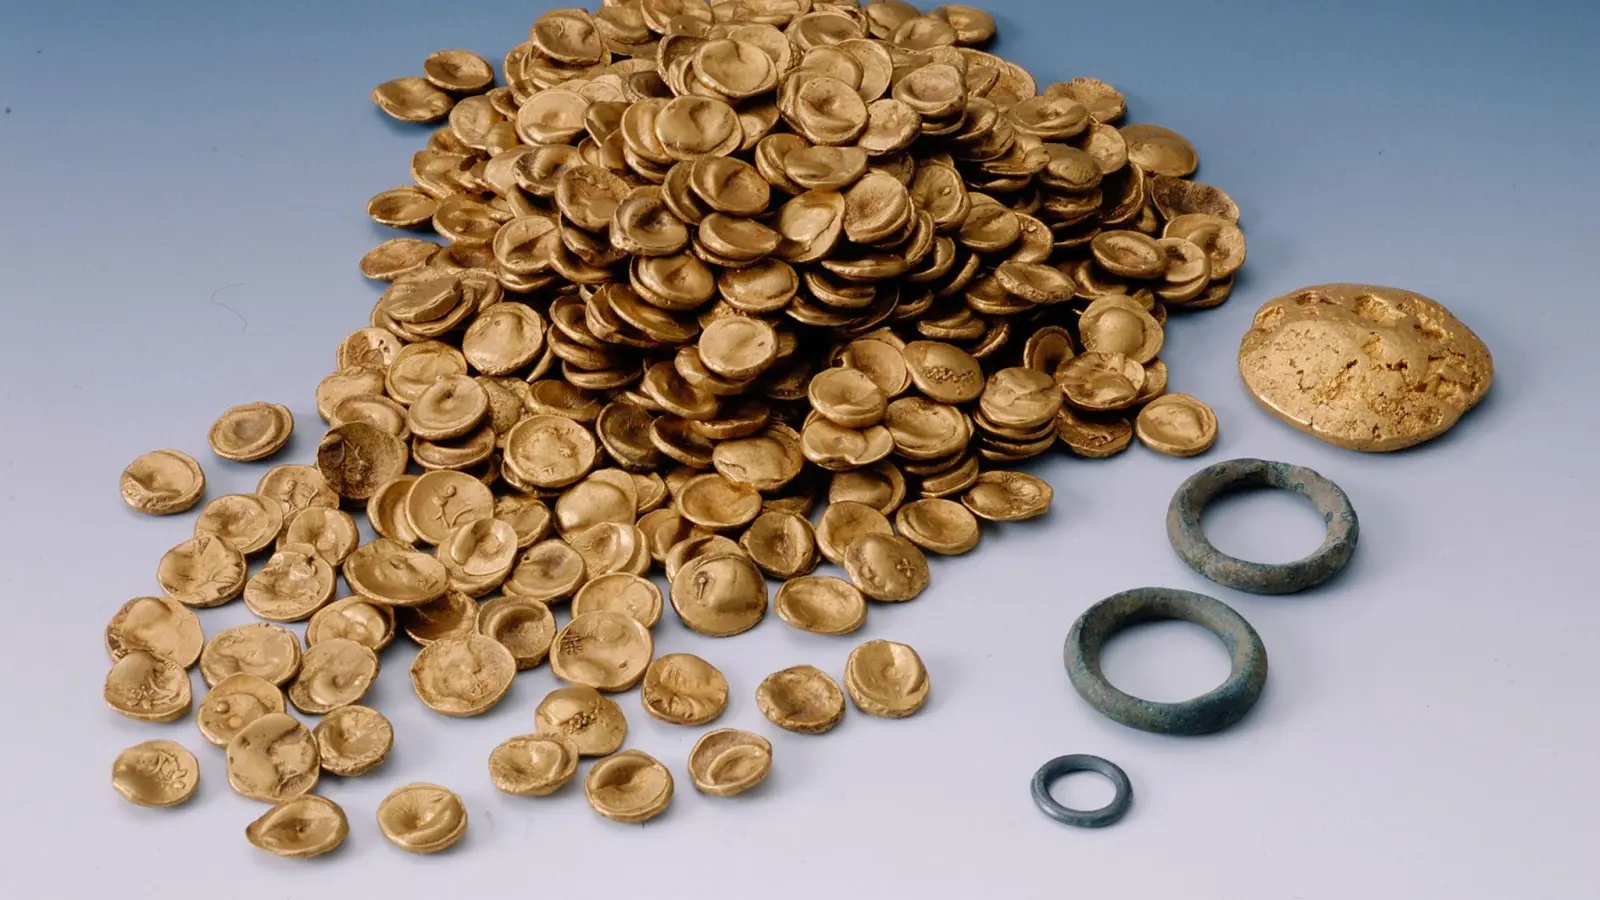 Keltische Goldmünzen. Der größte keltische Goldfund des 20. Jahrhunderts wurde 1999 bei Manching gefunden. Nun wurde der Goldschatz von Einbrechern gestohlen. (Foto: ---/Archäologische Staatssammlung /dpa)